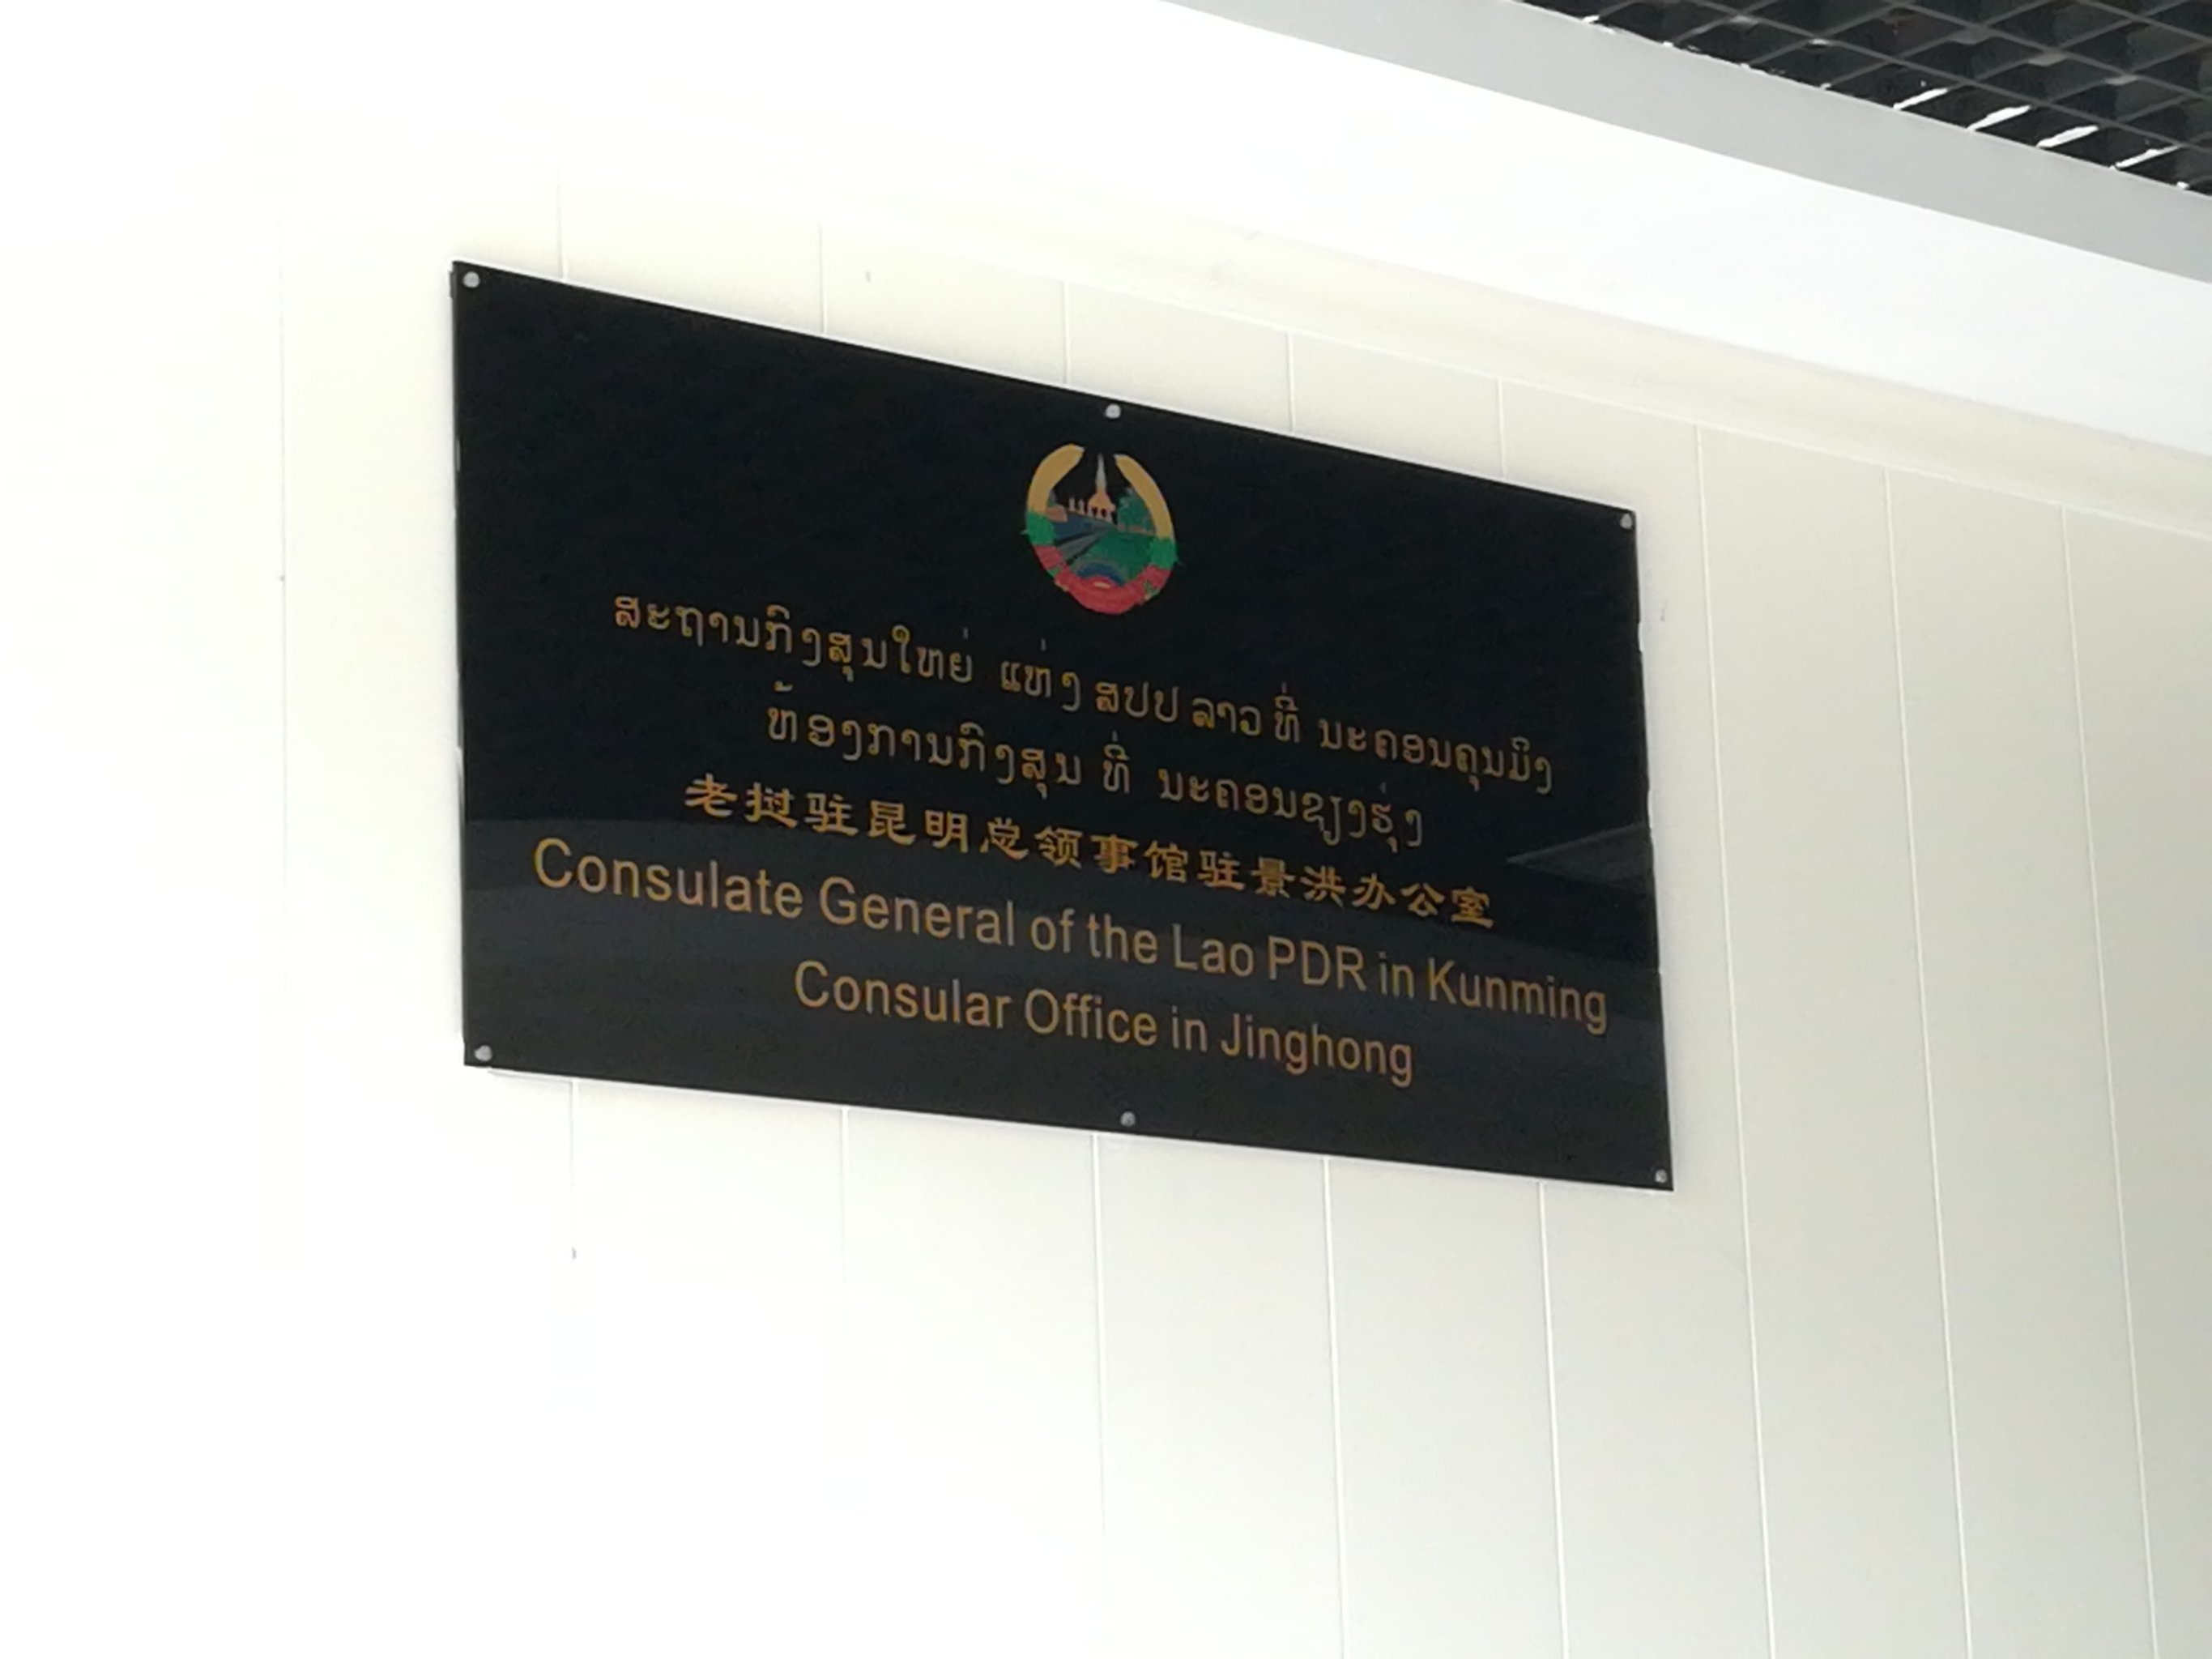 老挝驻昆明总领事馆驻景洪领事办公室